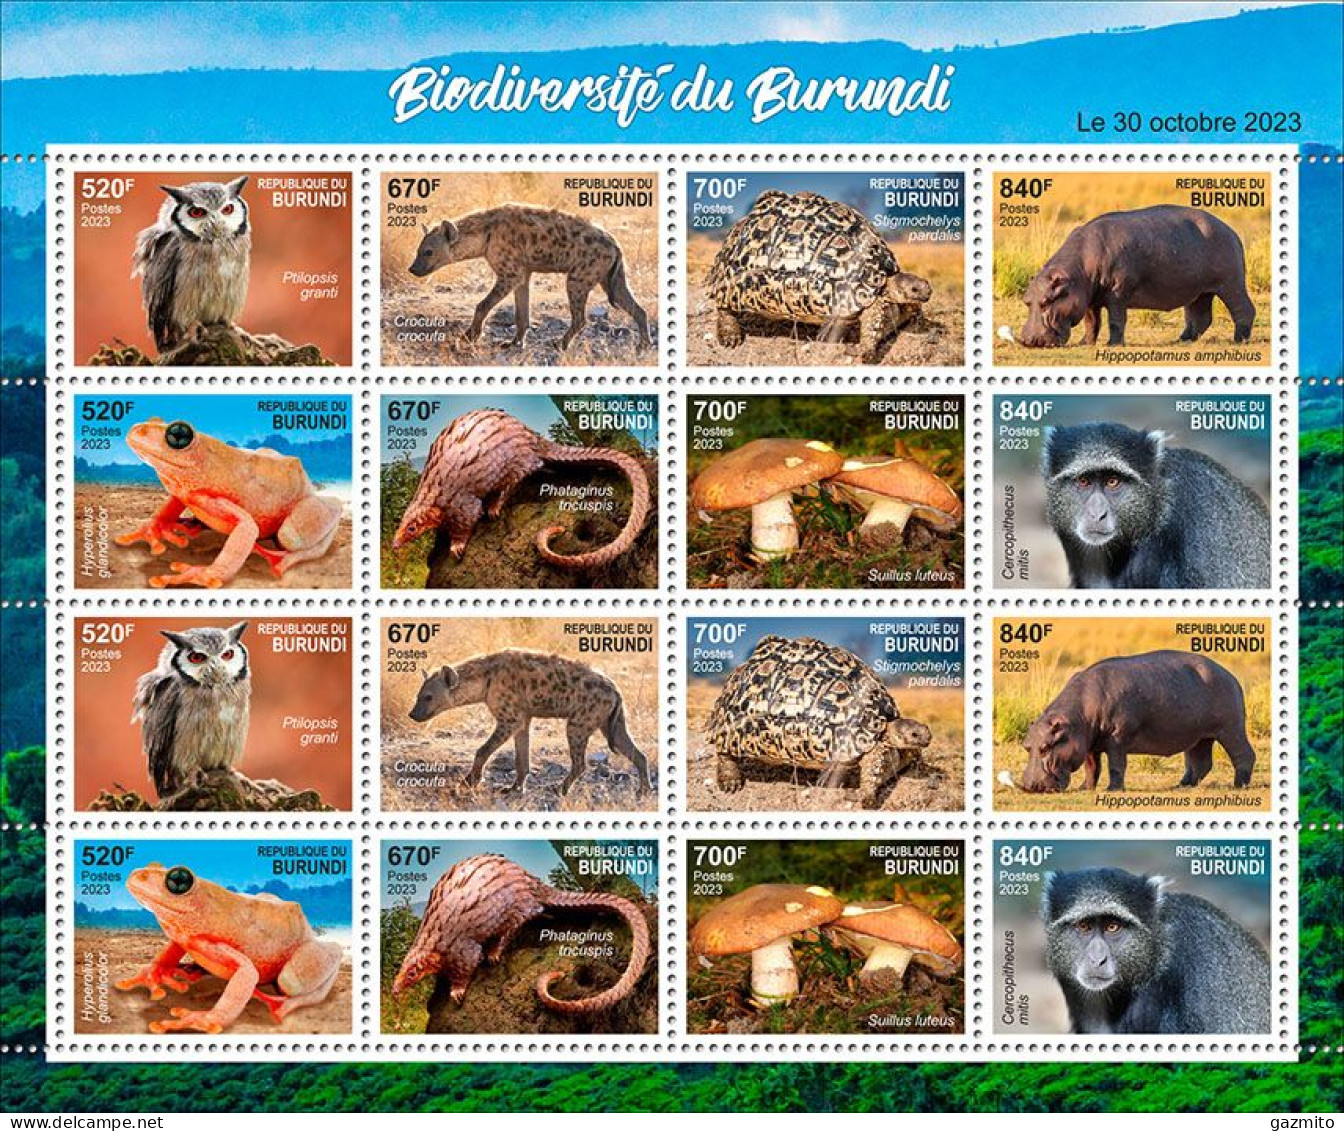 Burundi 2023, Biodiversity, Owl, Jena, Turtle, Hippo, Frog, Mushroom, Monkey, Sheetlet - Unused Stamps